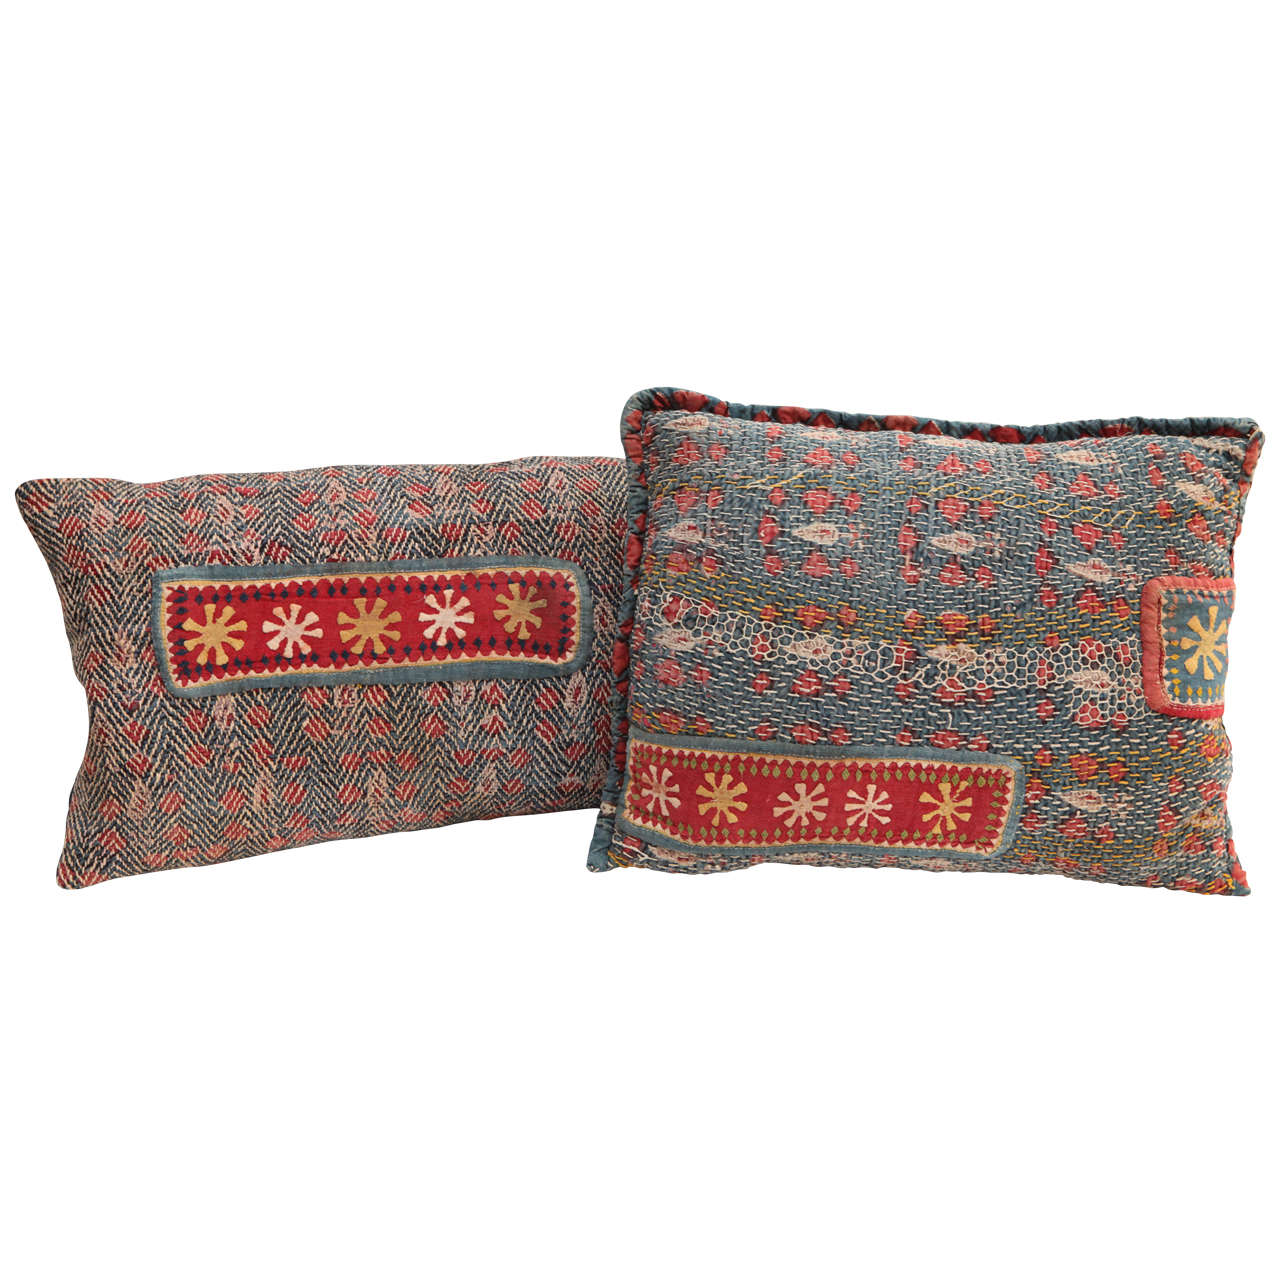 Gujarati Banjara Quilted Textile Pillows